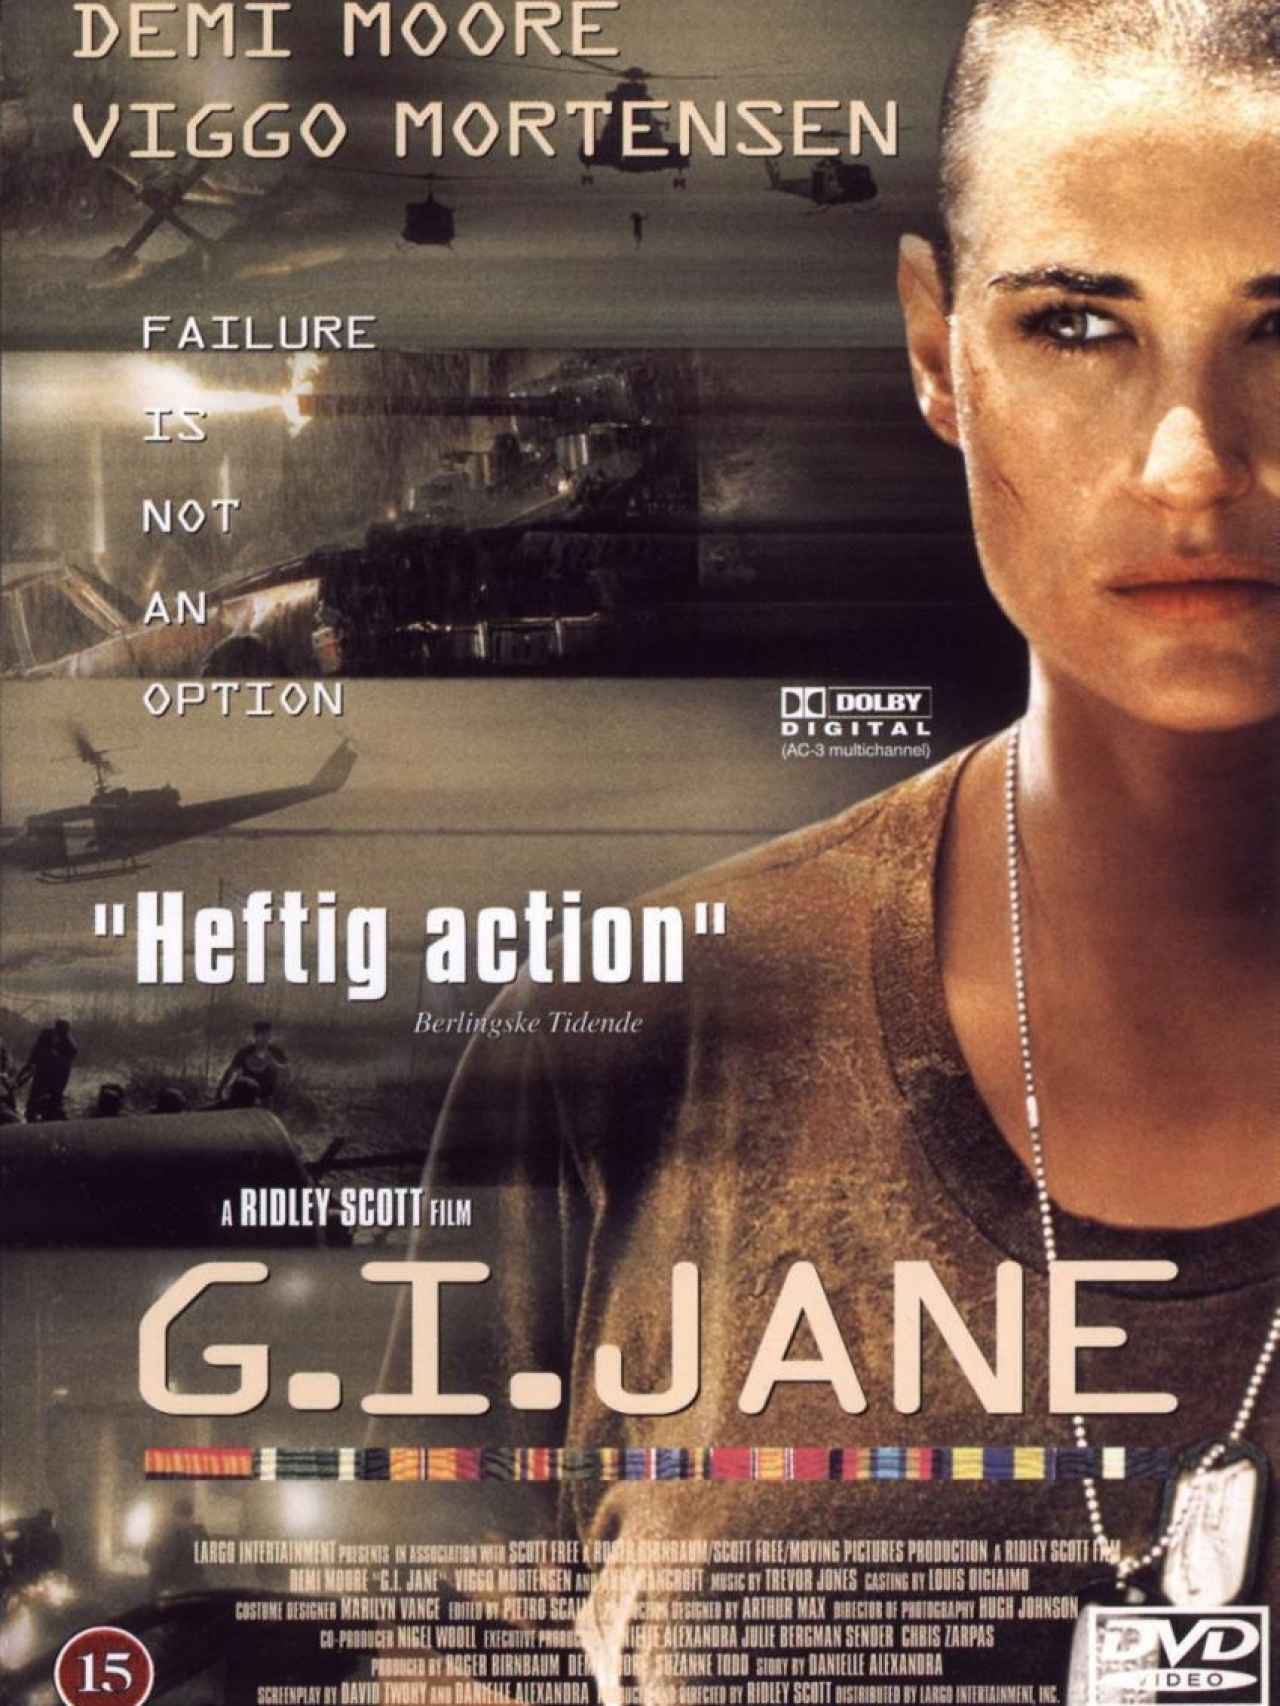 Jane first. Деми Мур солдат Джейн. Деми Мур солдат Джейн (1997). G.I. Jane (1997). Вигго Мортенсен солдат Джейн.